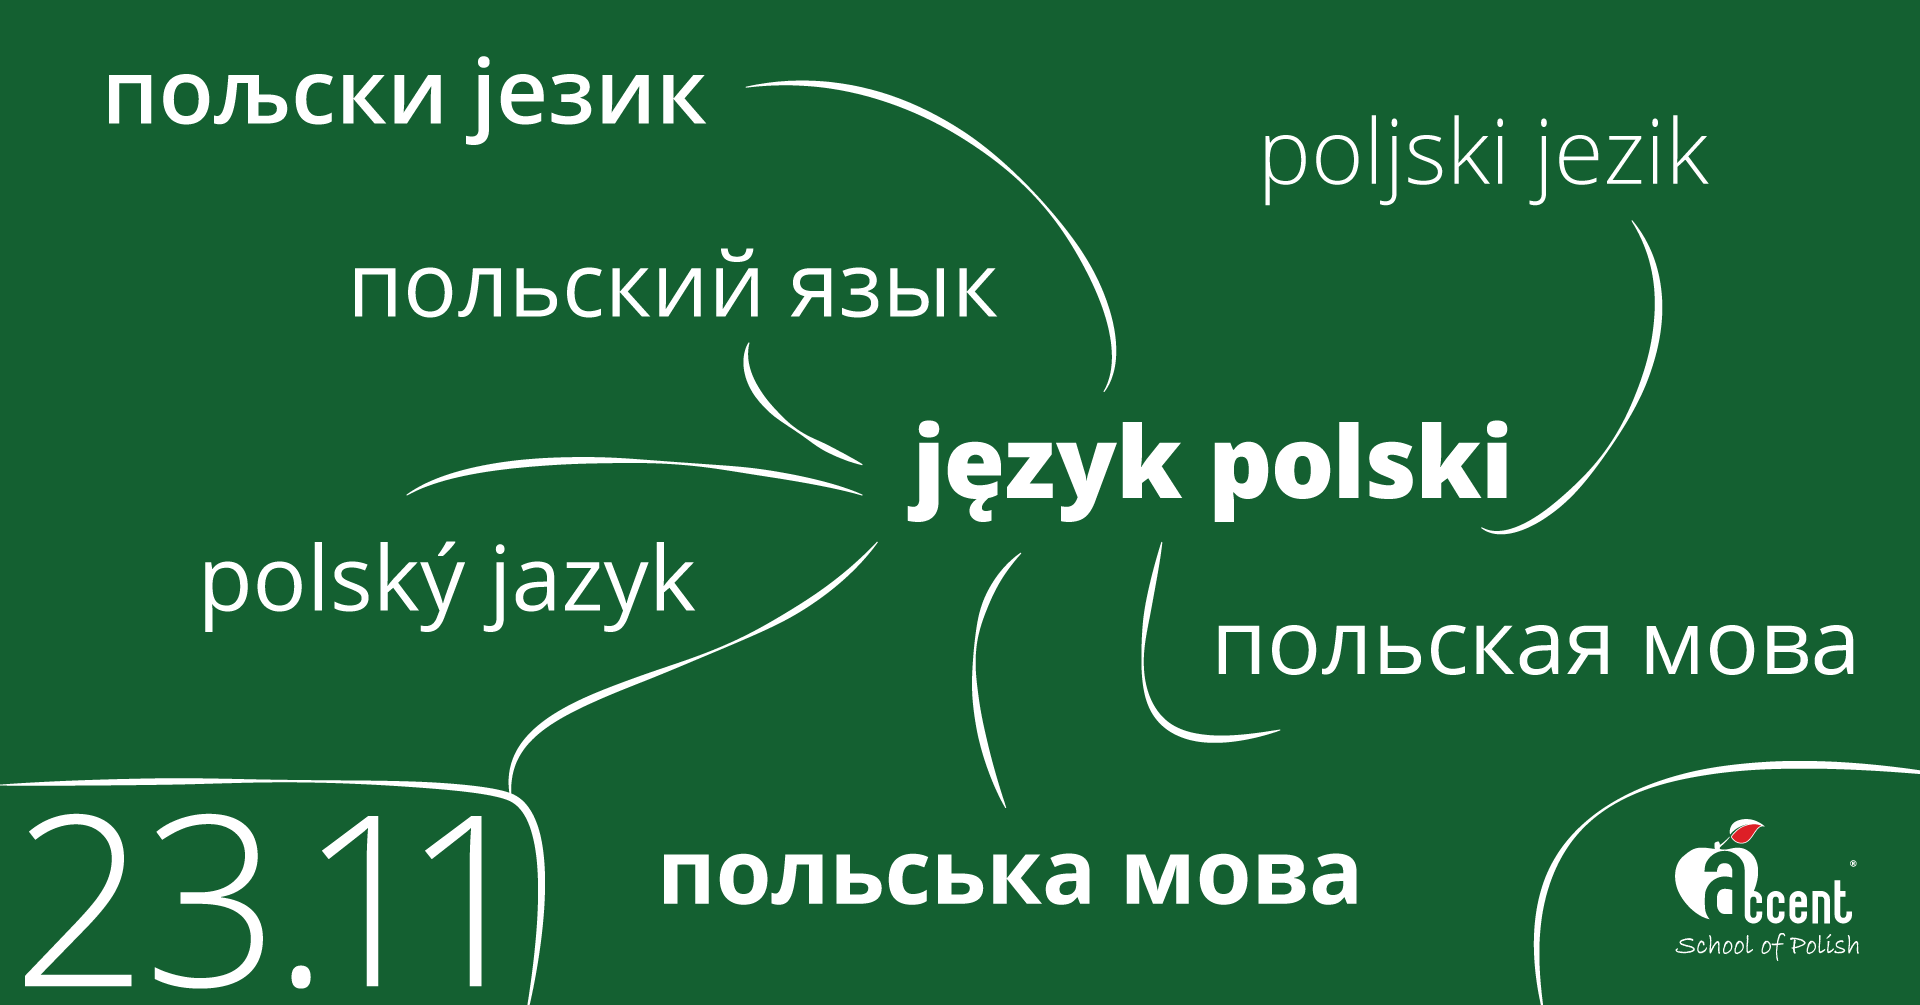 warsztat języki słowiańskie